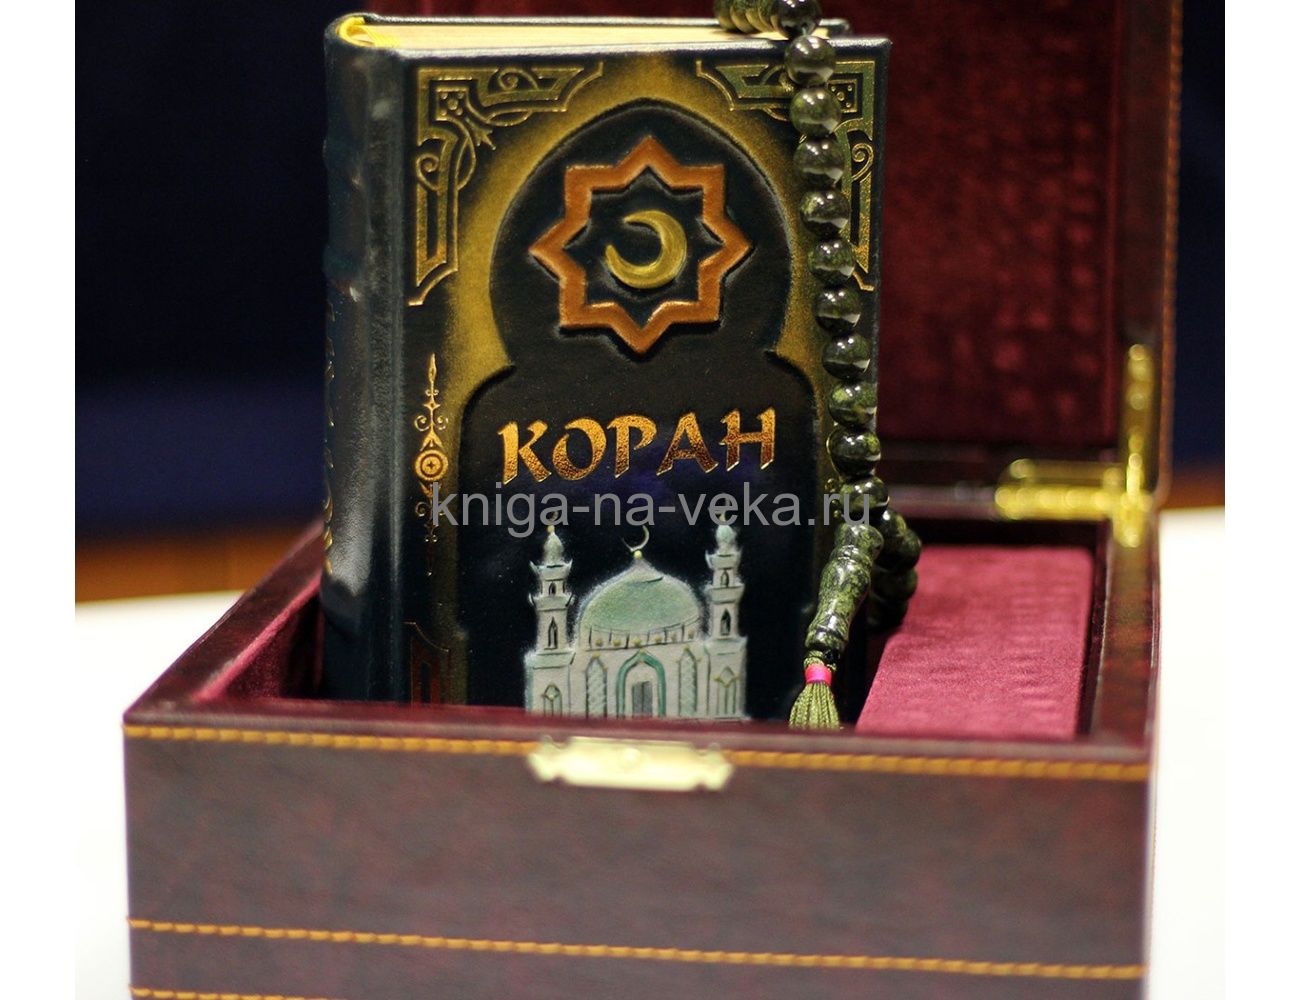 Подарочный набор «Коран» (кожаная книга малого формата, чётки, кейс)